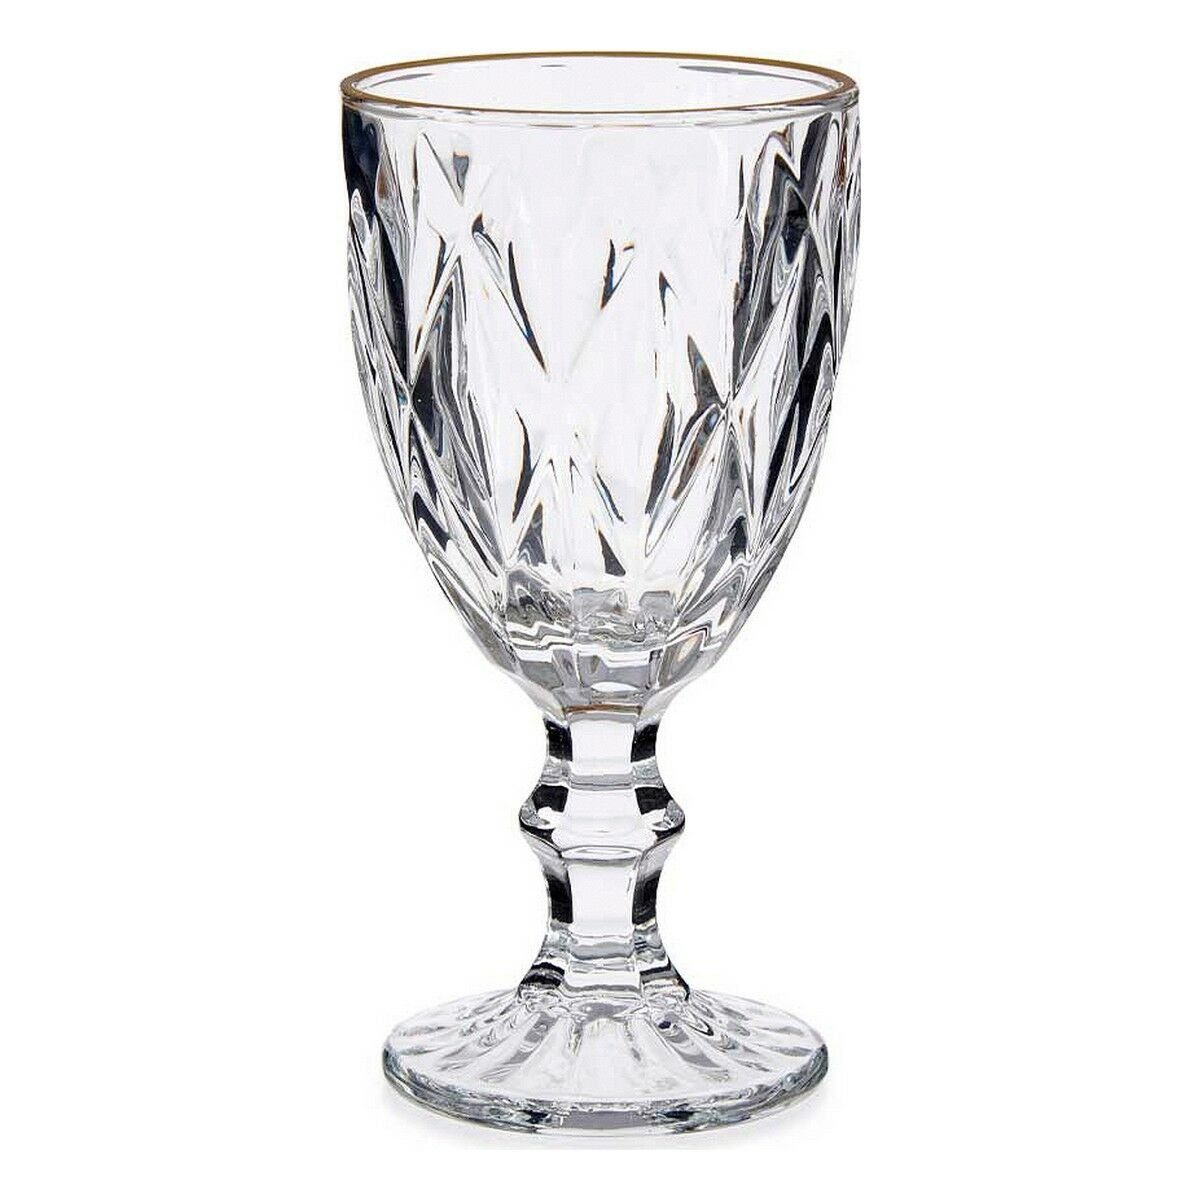 Vivalto Glas Weinglas Golden ml, 6 330 Stück Glas Durchsichtig Glas